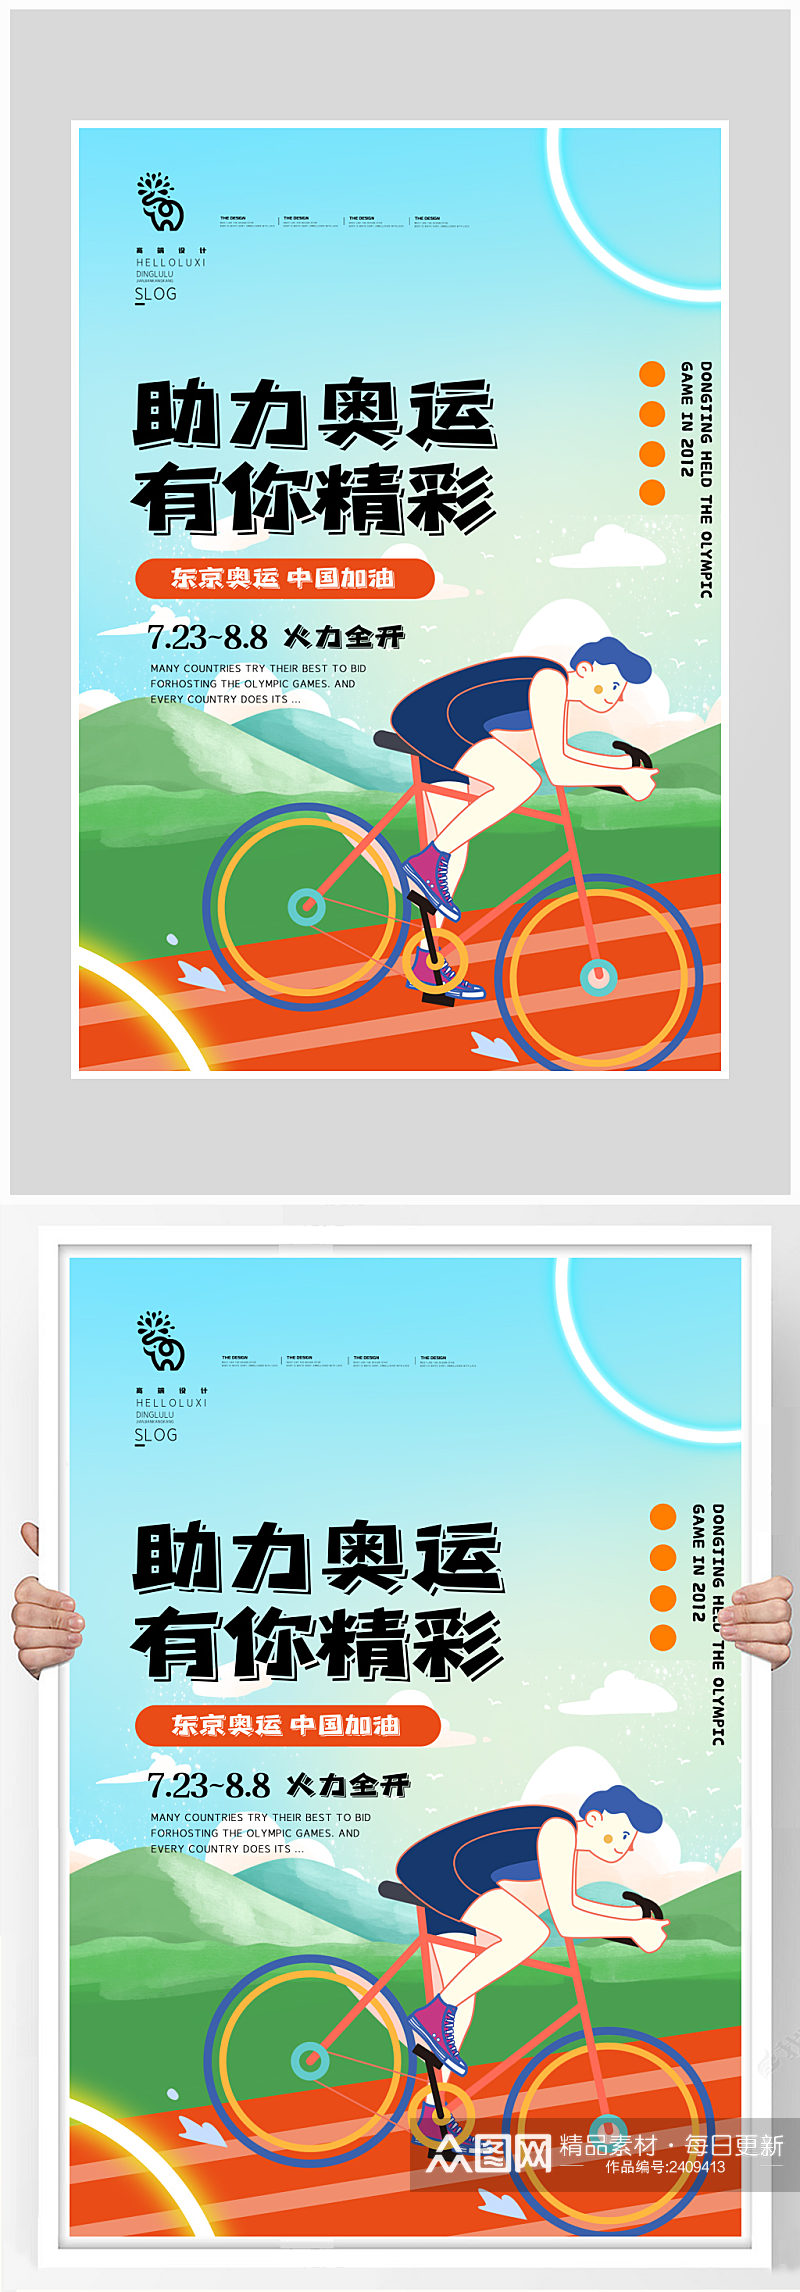 创意质感助力奥运精神比赛海报设计素材